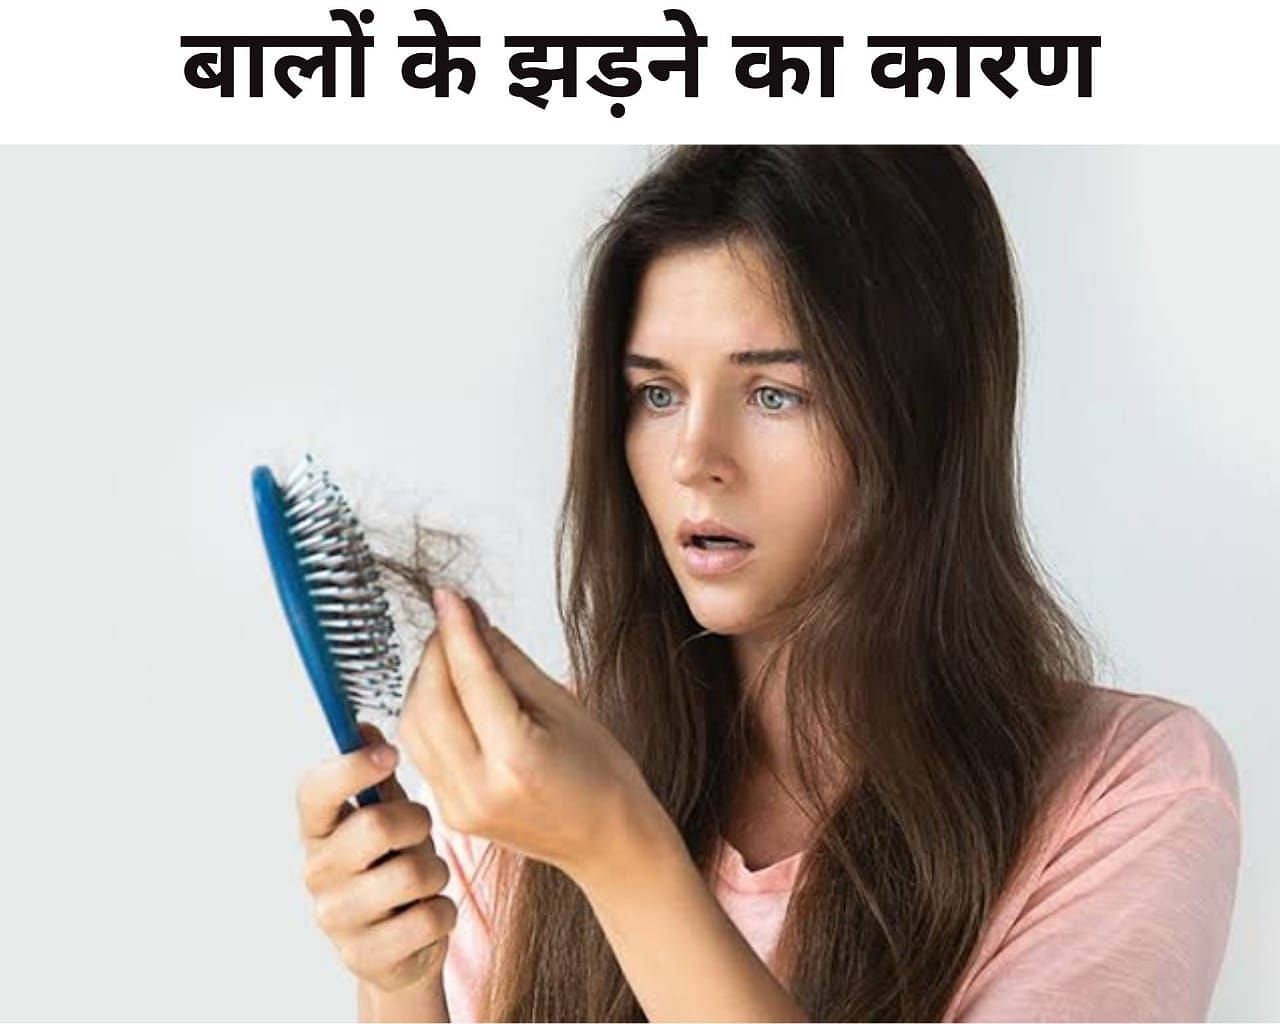 बालों के झड़ने का कारण (फोटो - sportskeeda hindi)